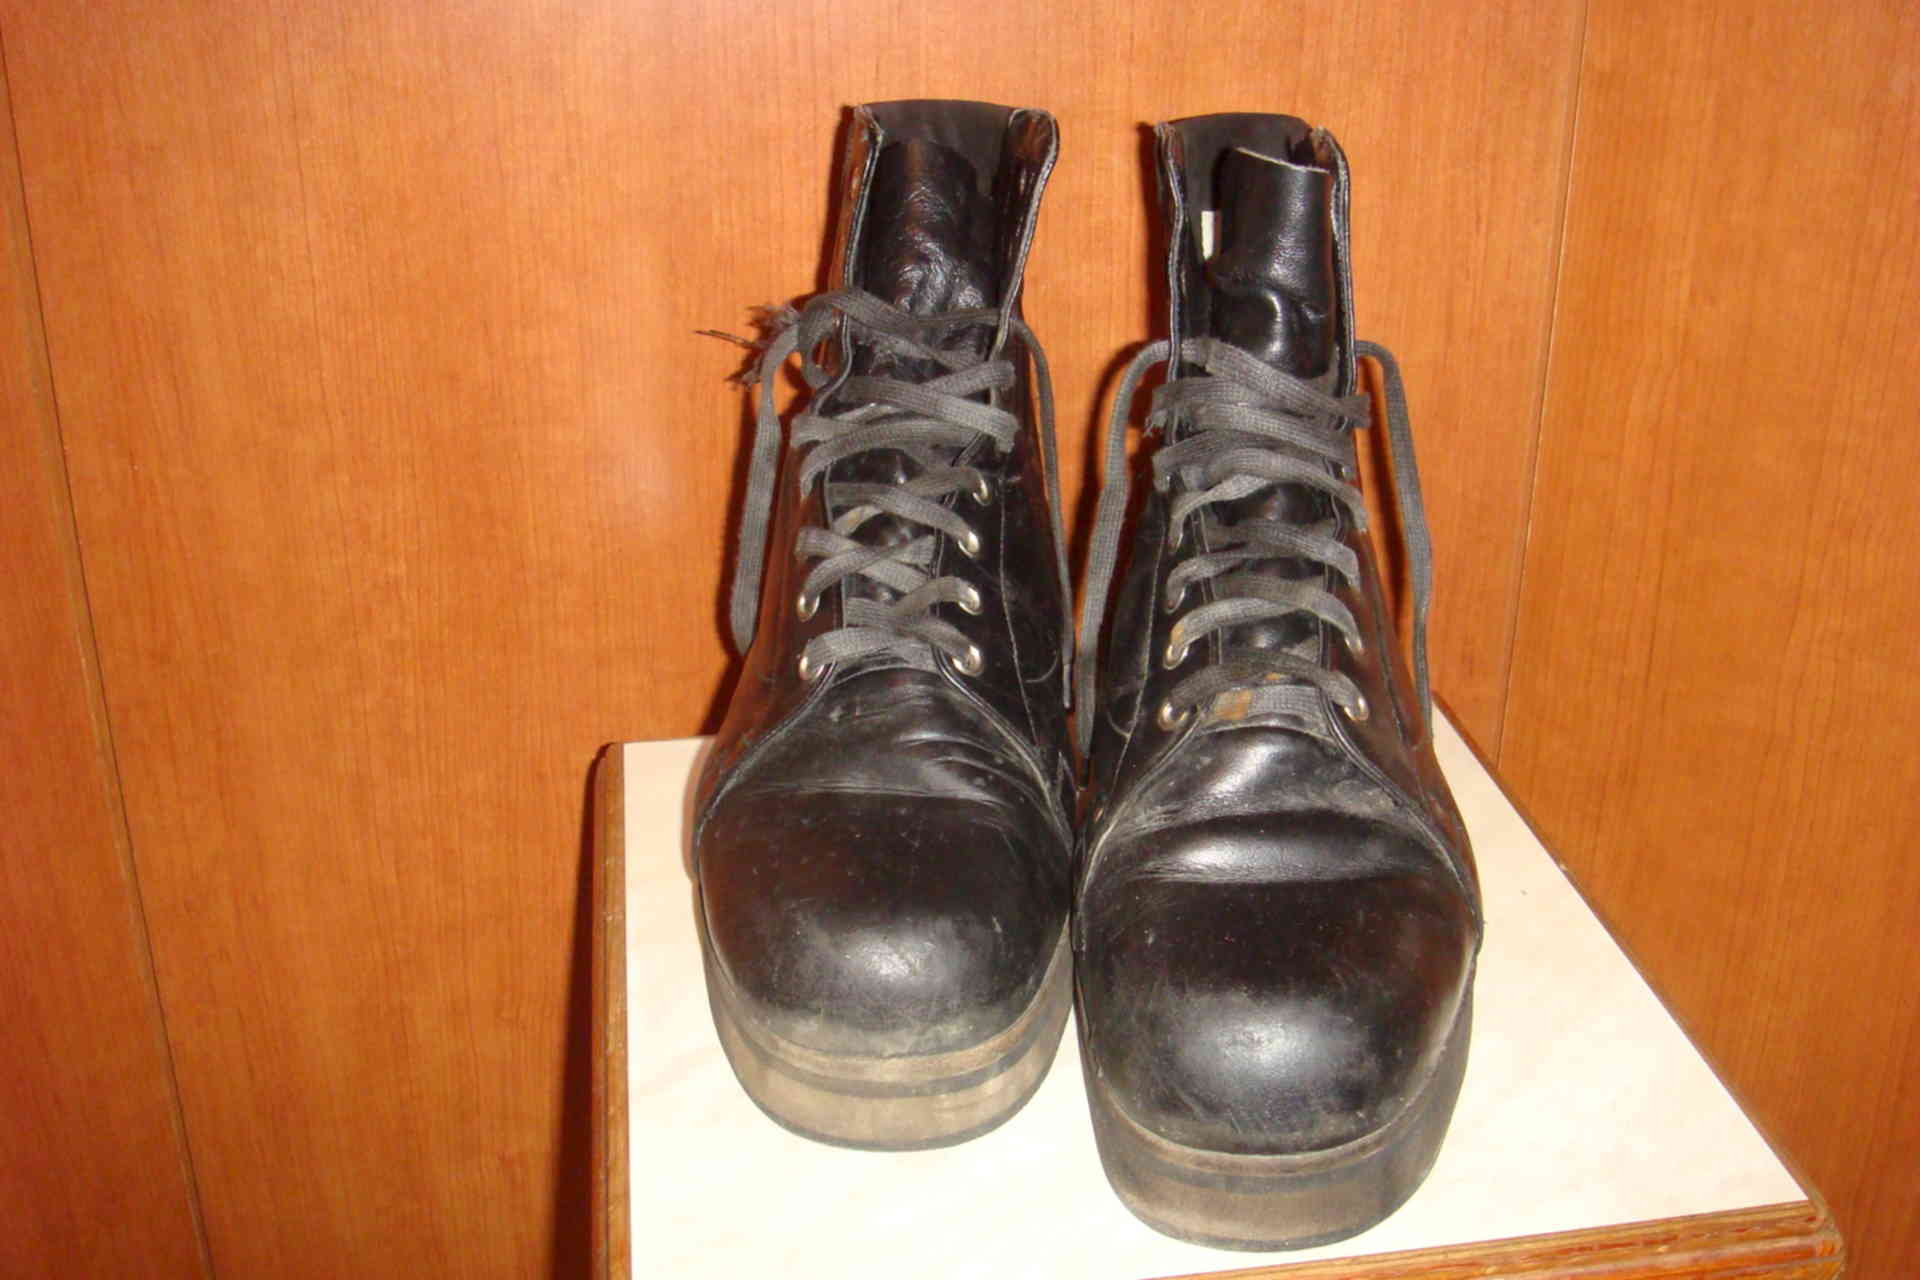 Советские туристические ботинки